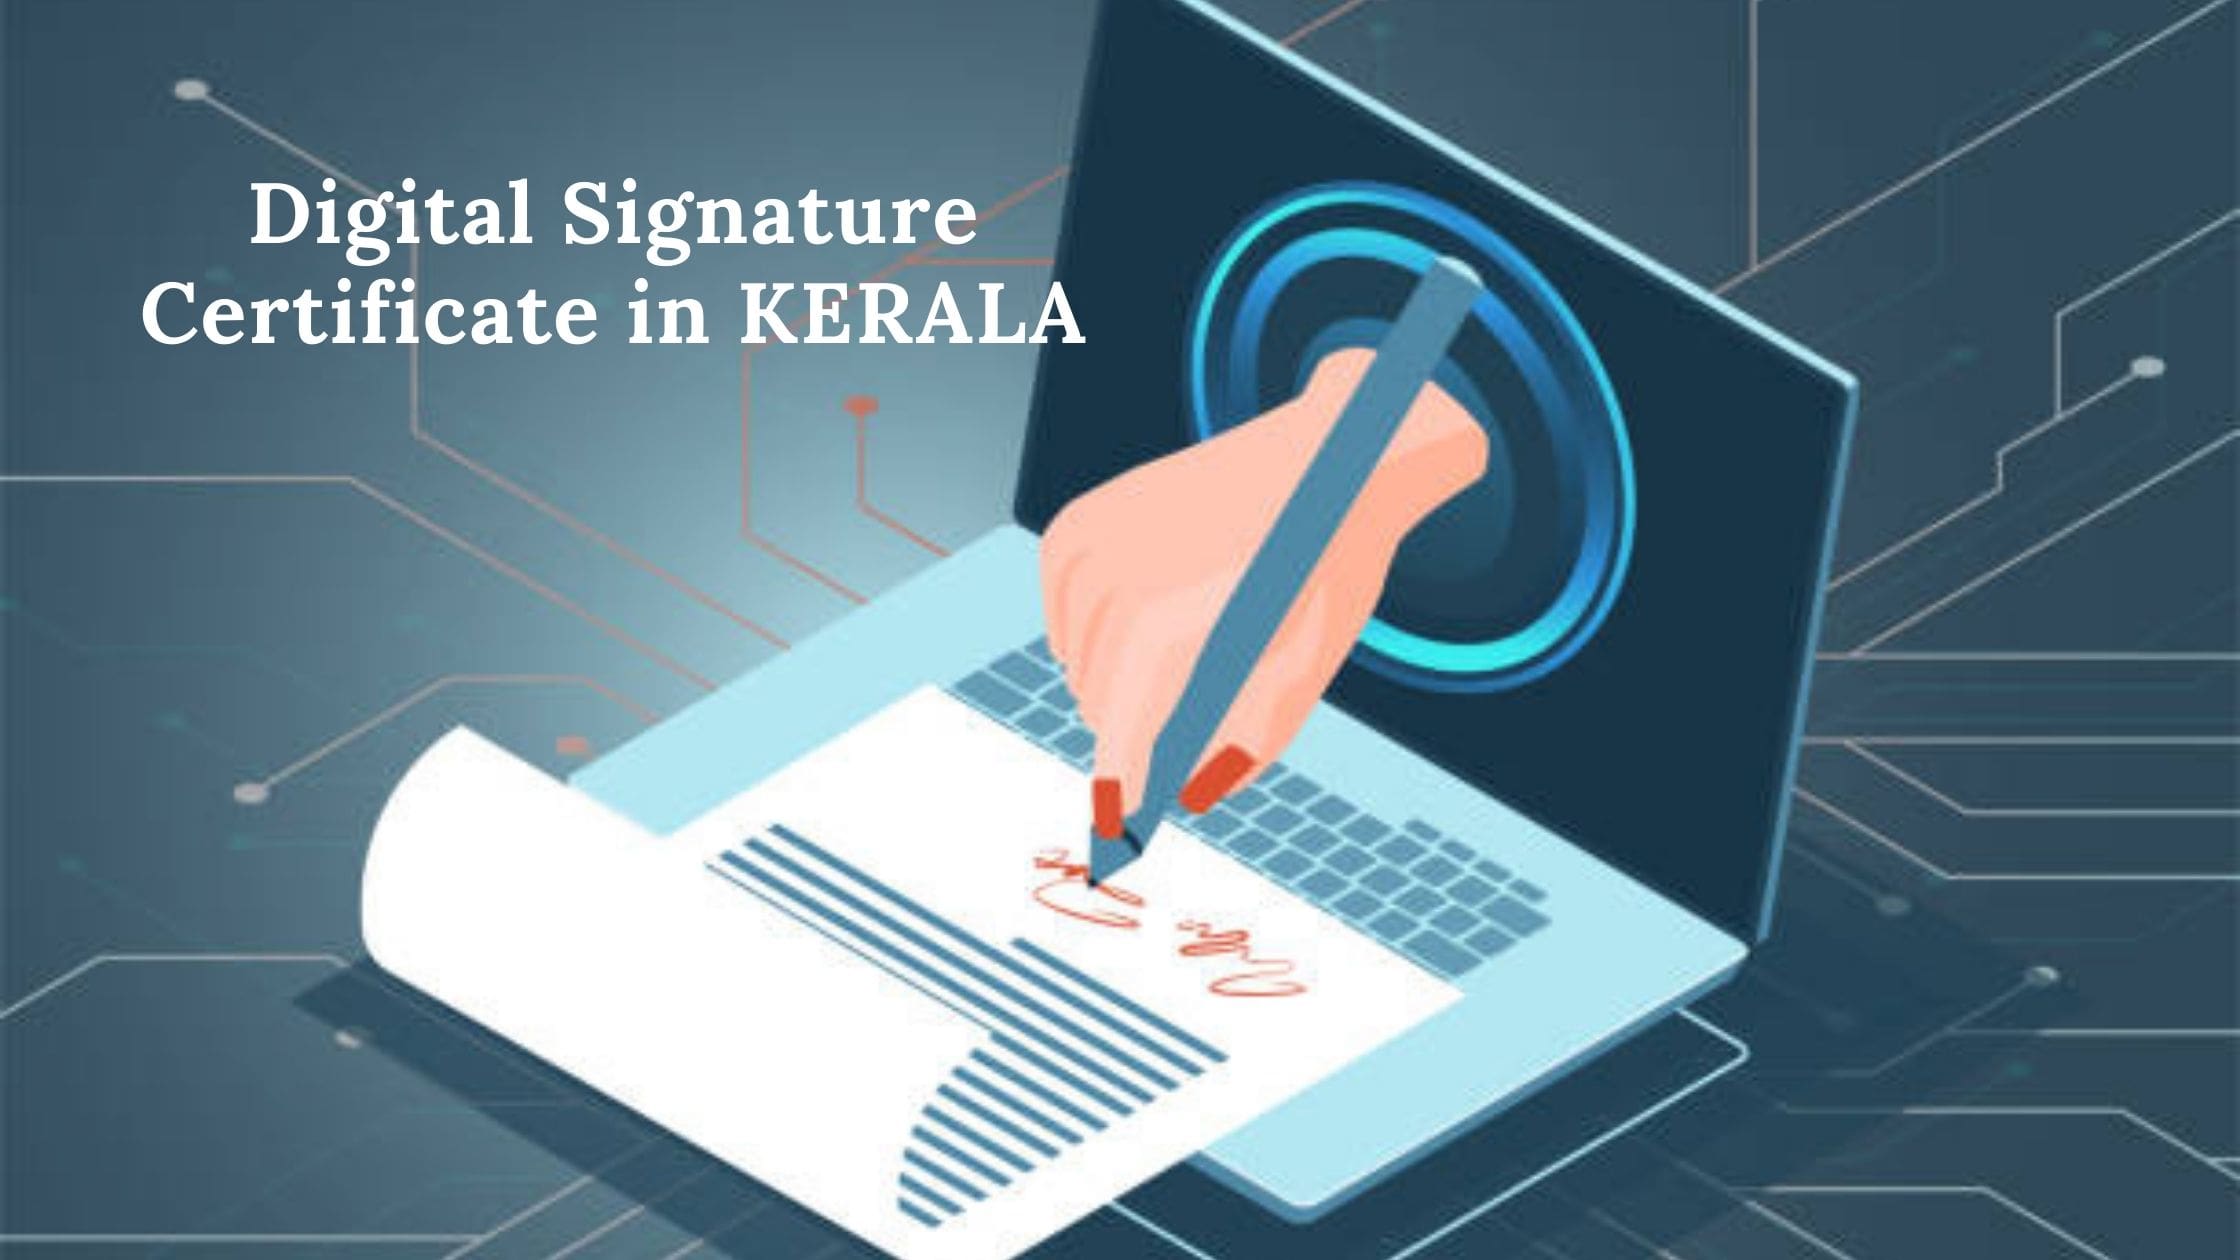 Digital Signature Certificate in Kerala